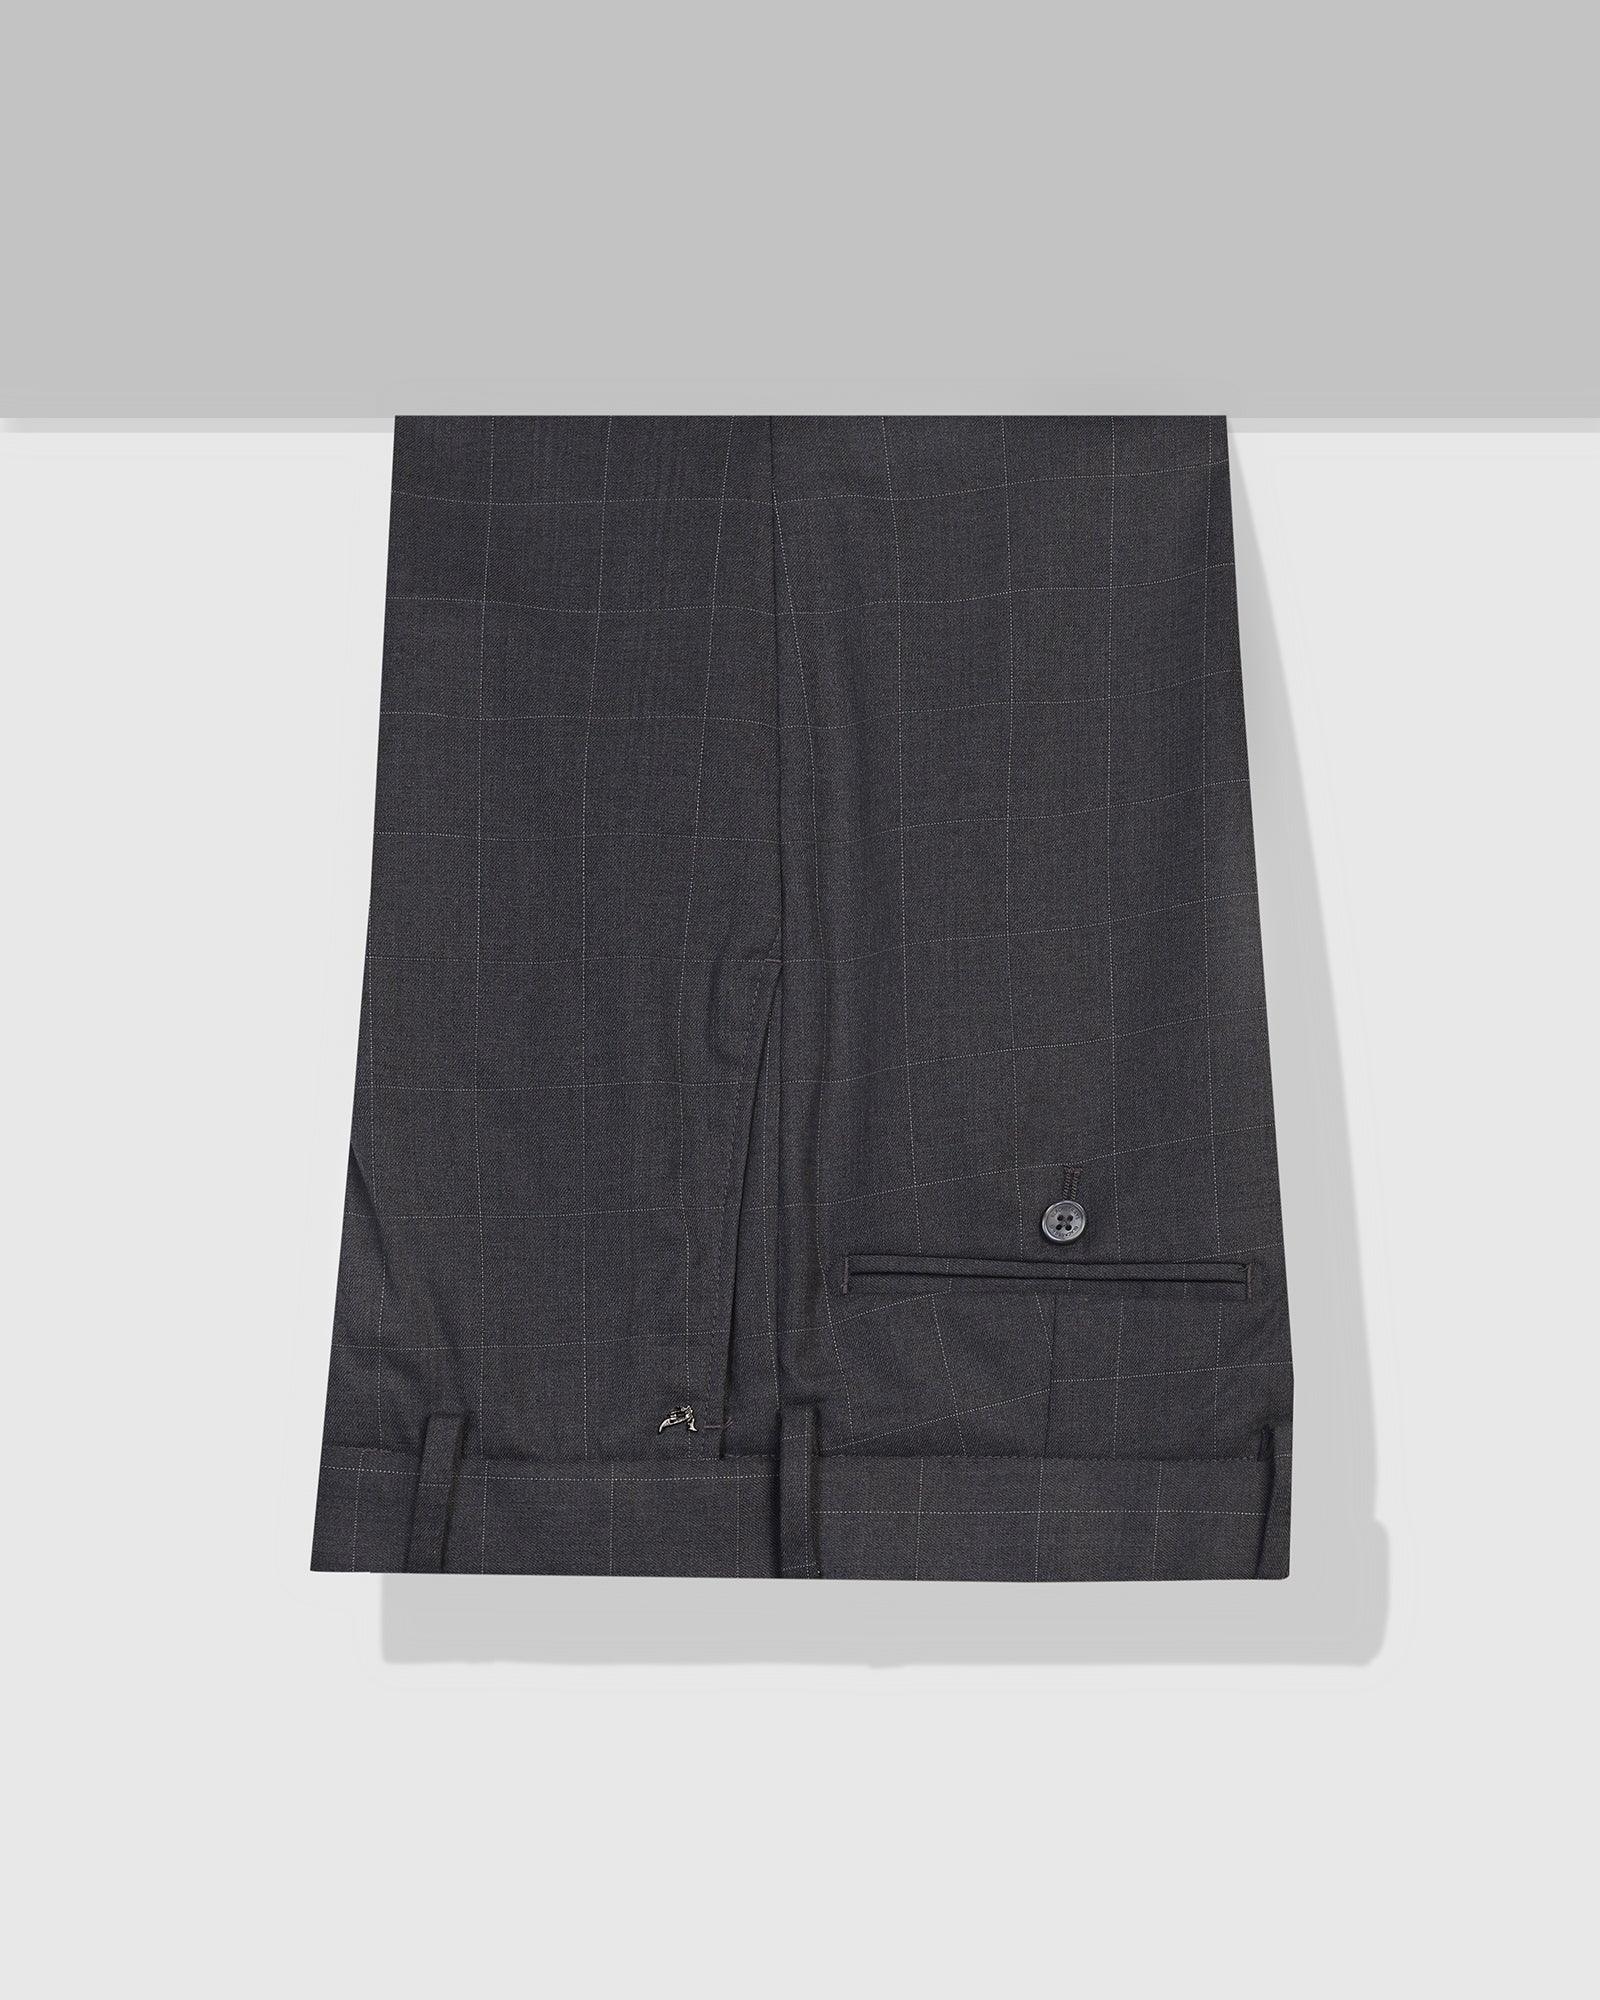 Slim Fit B-91 Formal Grey Check Trouser - Hash